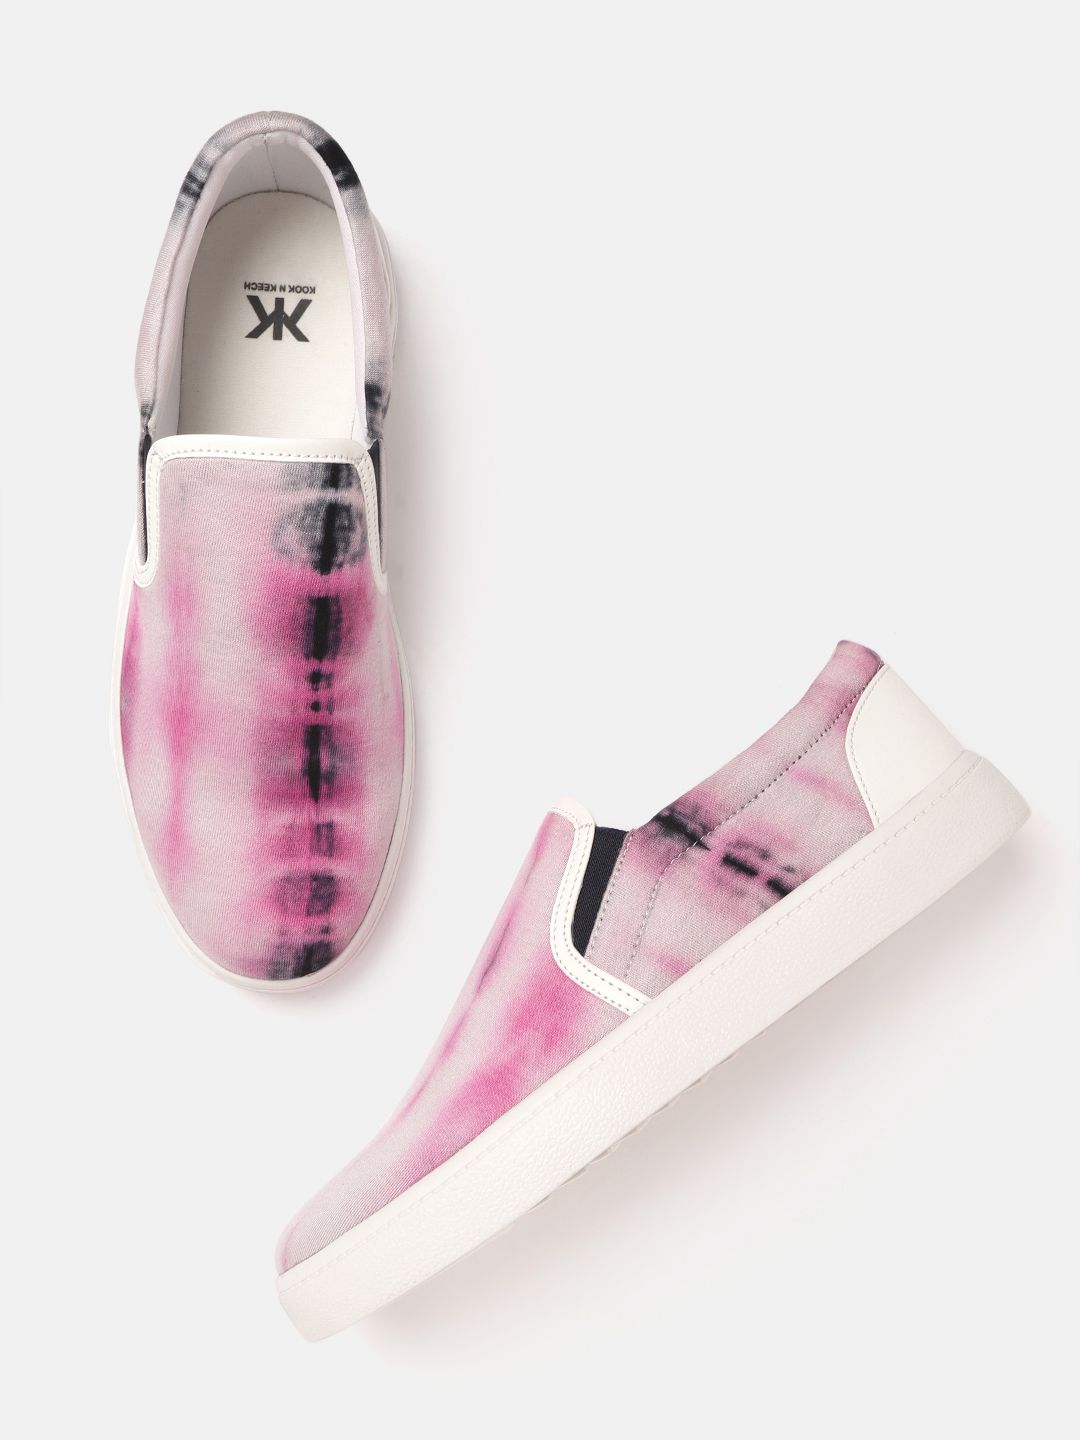 Kook N Keech Women Pink & Black Tie-Dye Slip-On Sneakers Price in India